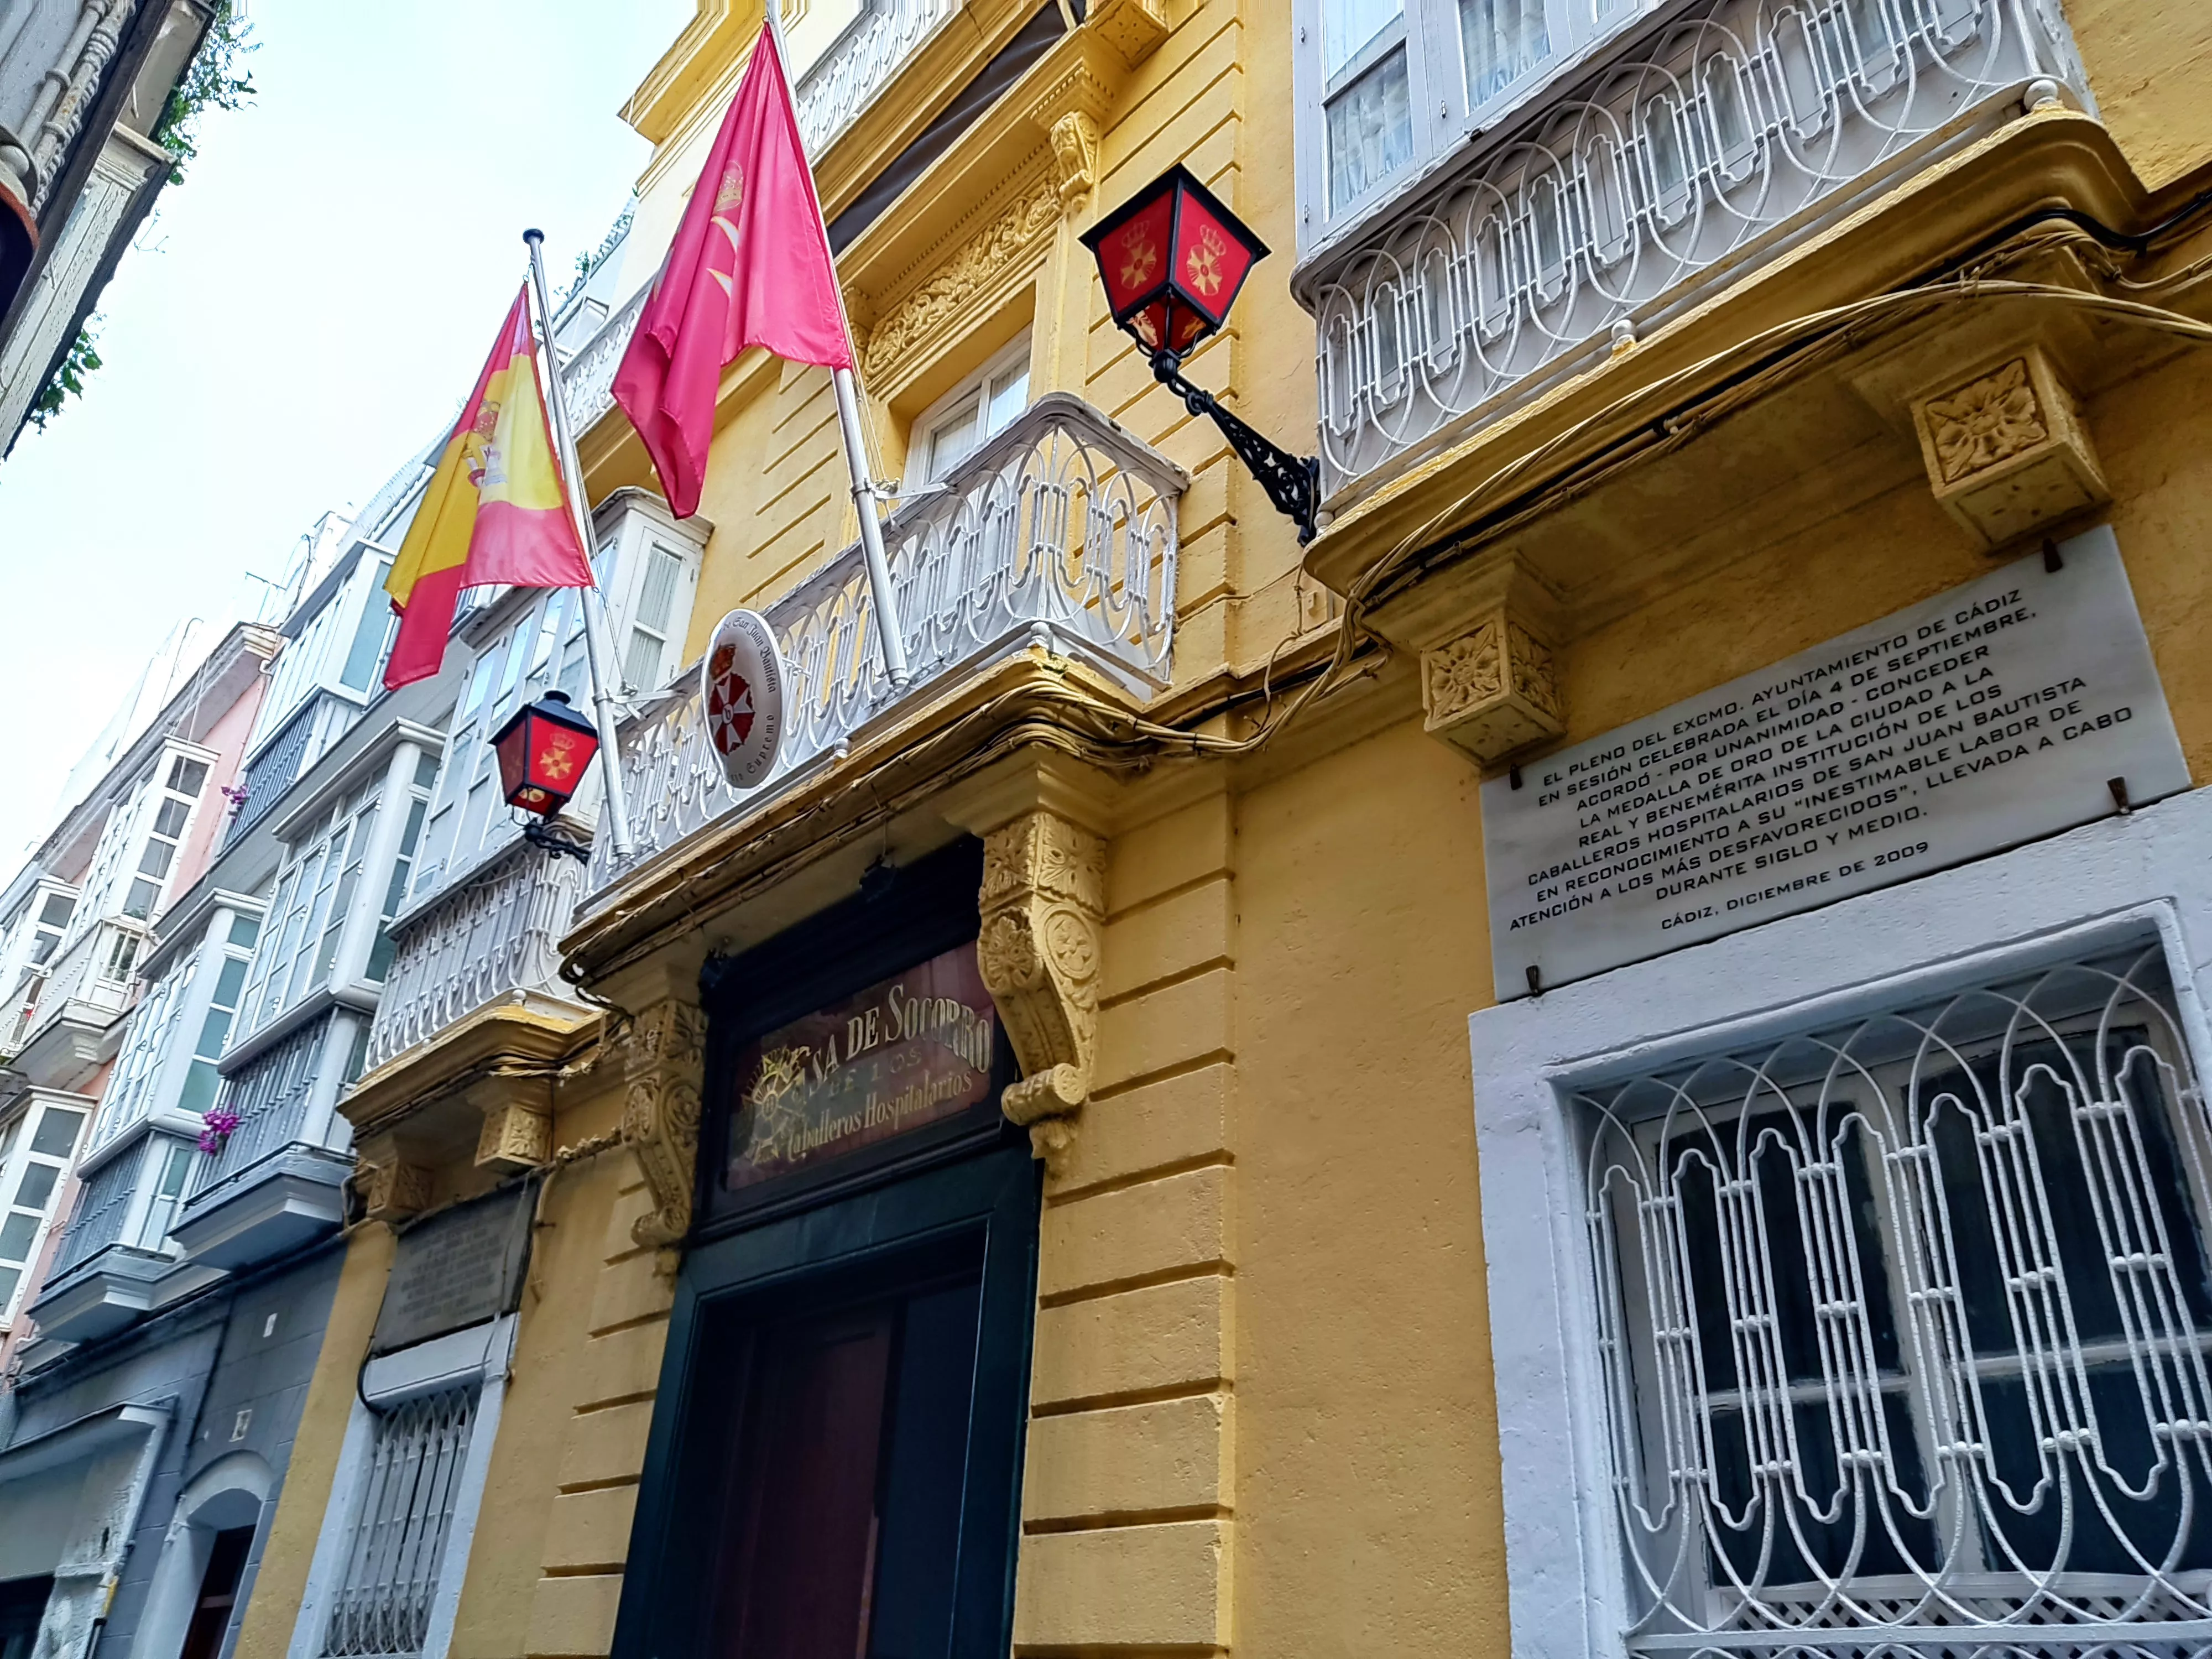 La institución religiosa lleva prestando servicio en Cádiz desde hace más de un siglo